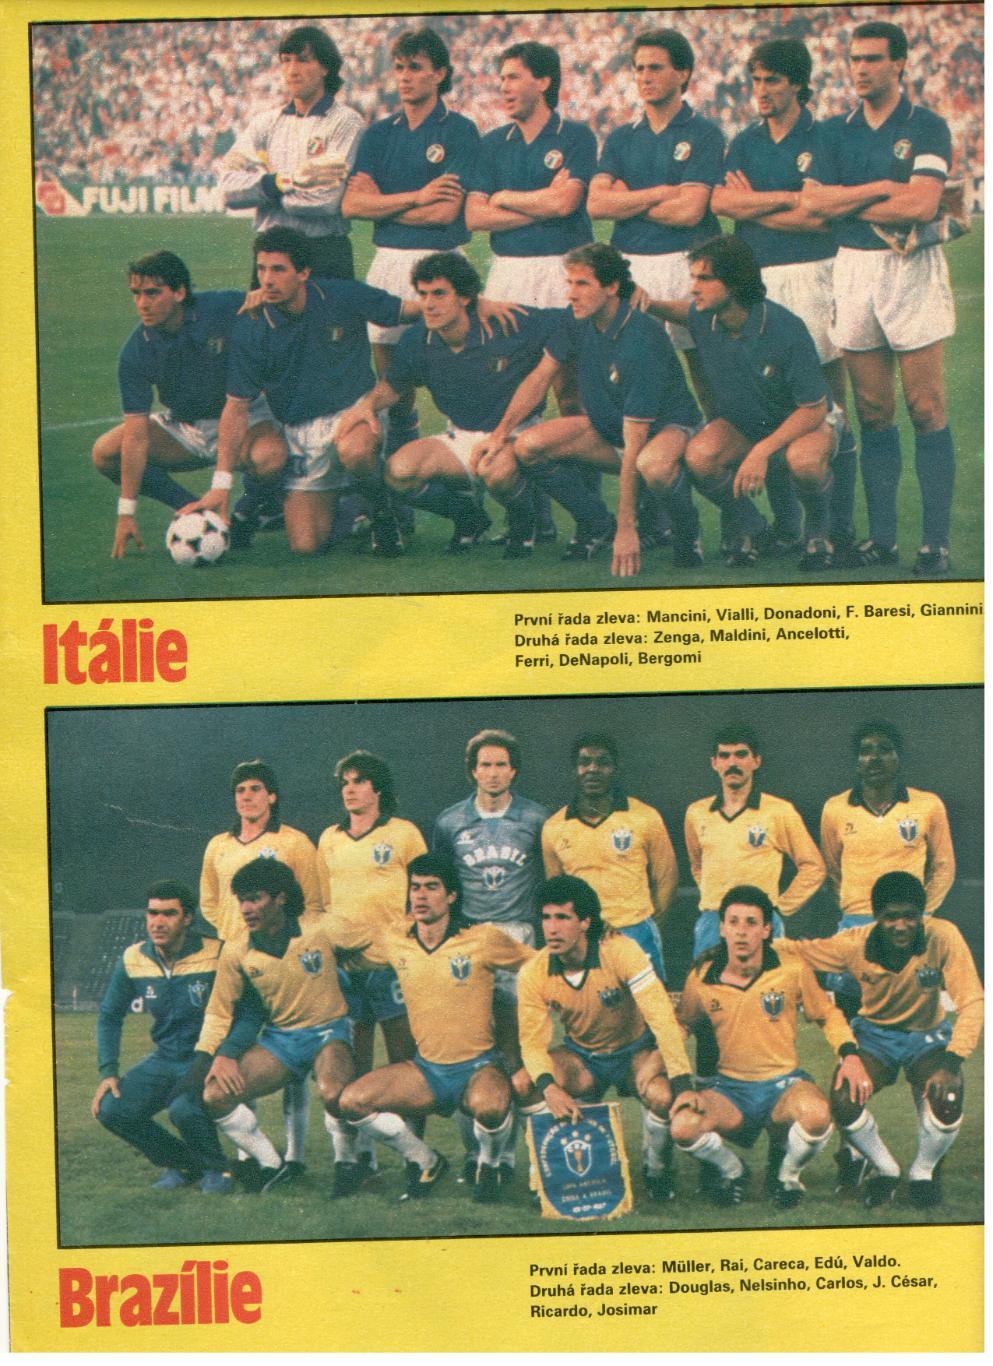 Участники чемпионата мира 1990. Италия, Бразилия